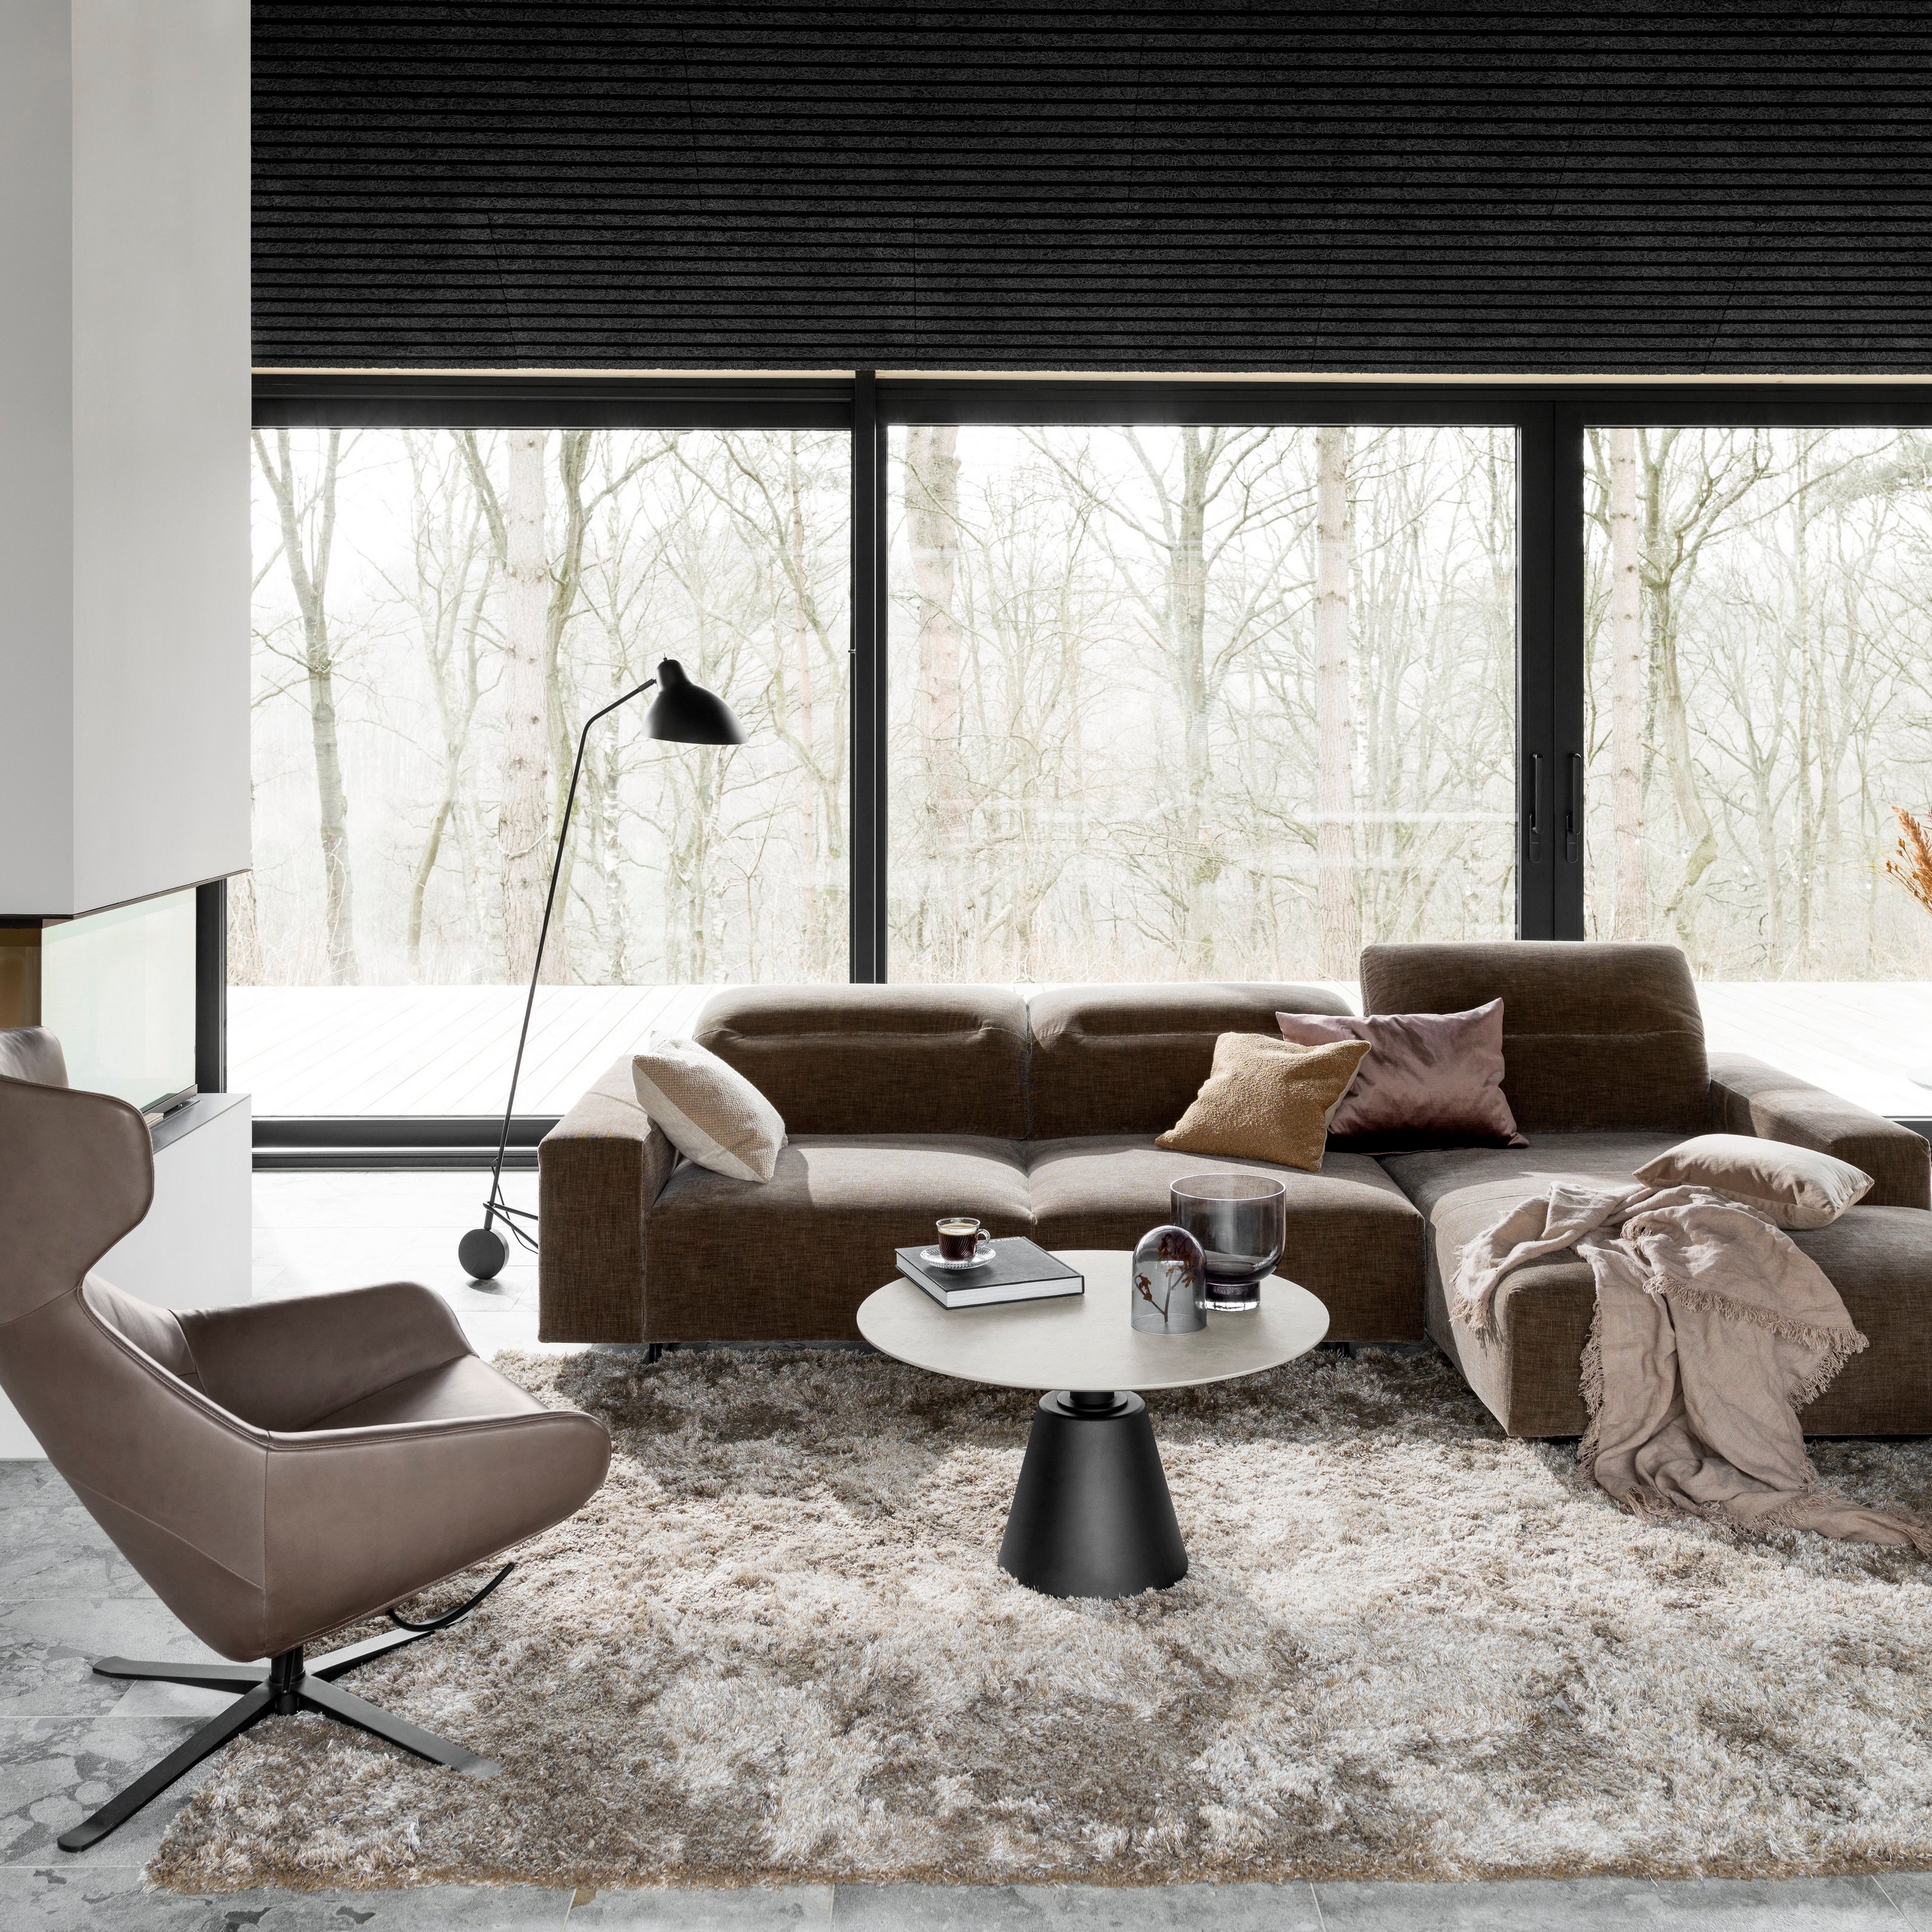 Moderne stue med brun modulsofa, gråt tæppe og sort gulvlampe ved vindue.